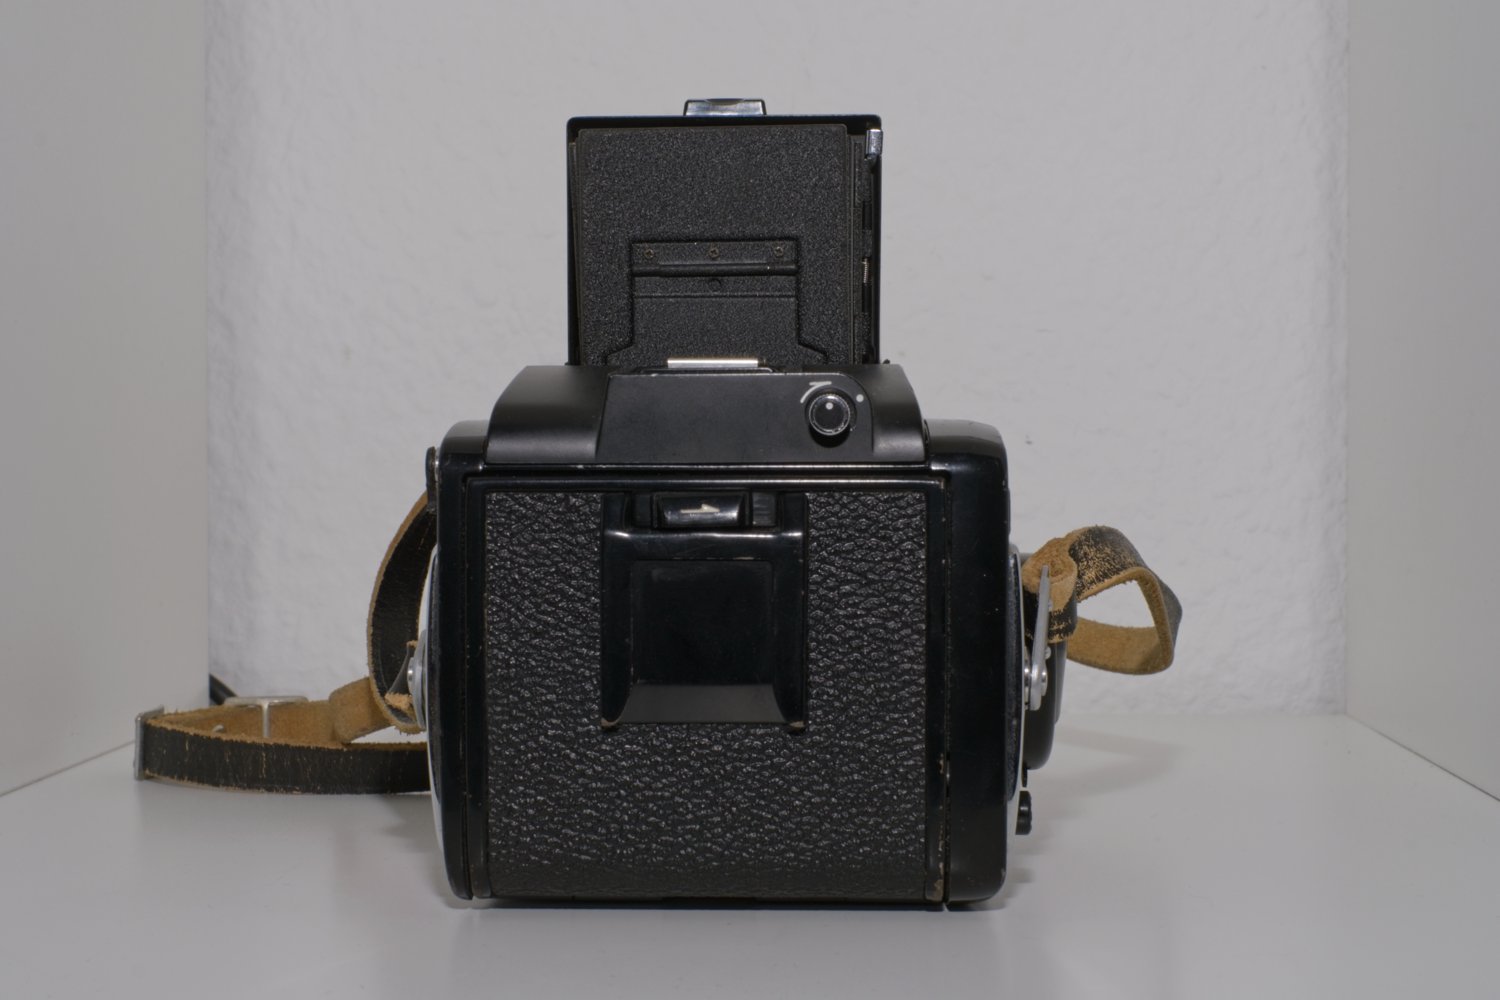 Die RÃ¼ckseite der Kamera mit dem Verriegelungsmechanismus des Filmfaches und rechts oberhalb davon der Mechanismus zum Herausnehmen des Suchermodules.